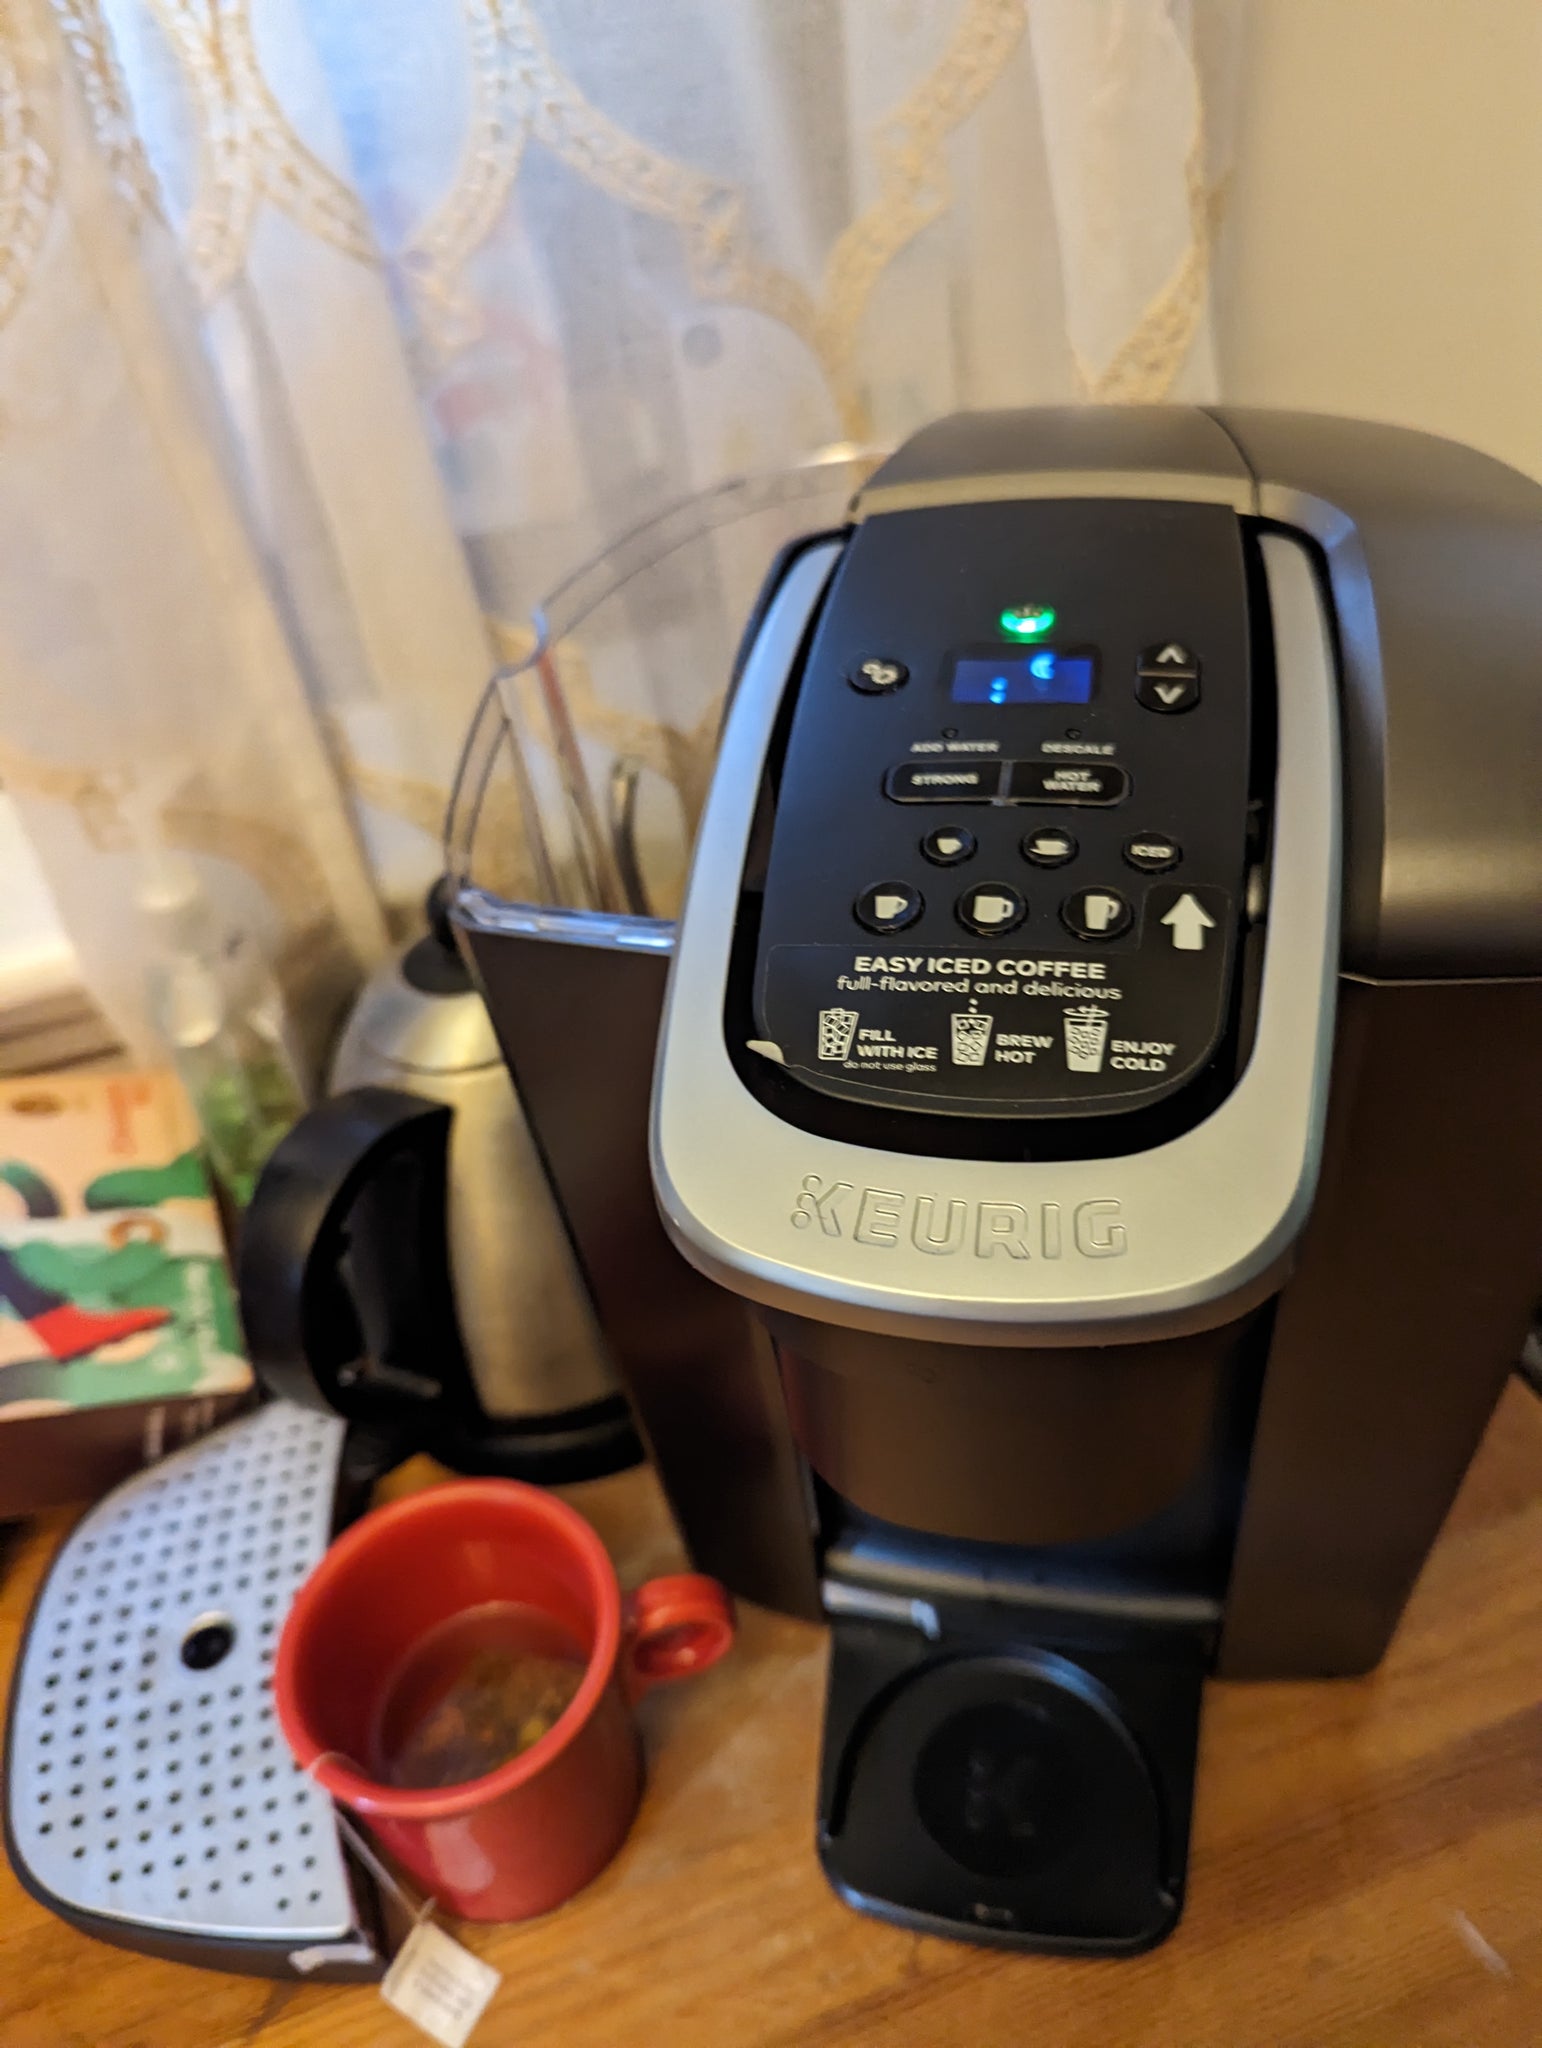 Keurig K-Elite Coffee Maker – day undefined